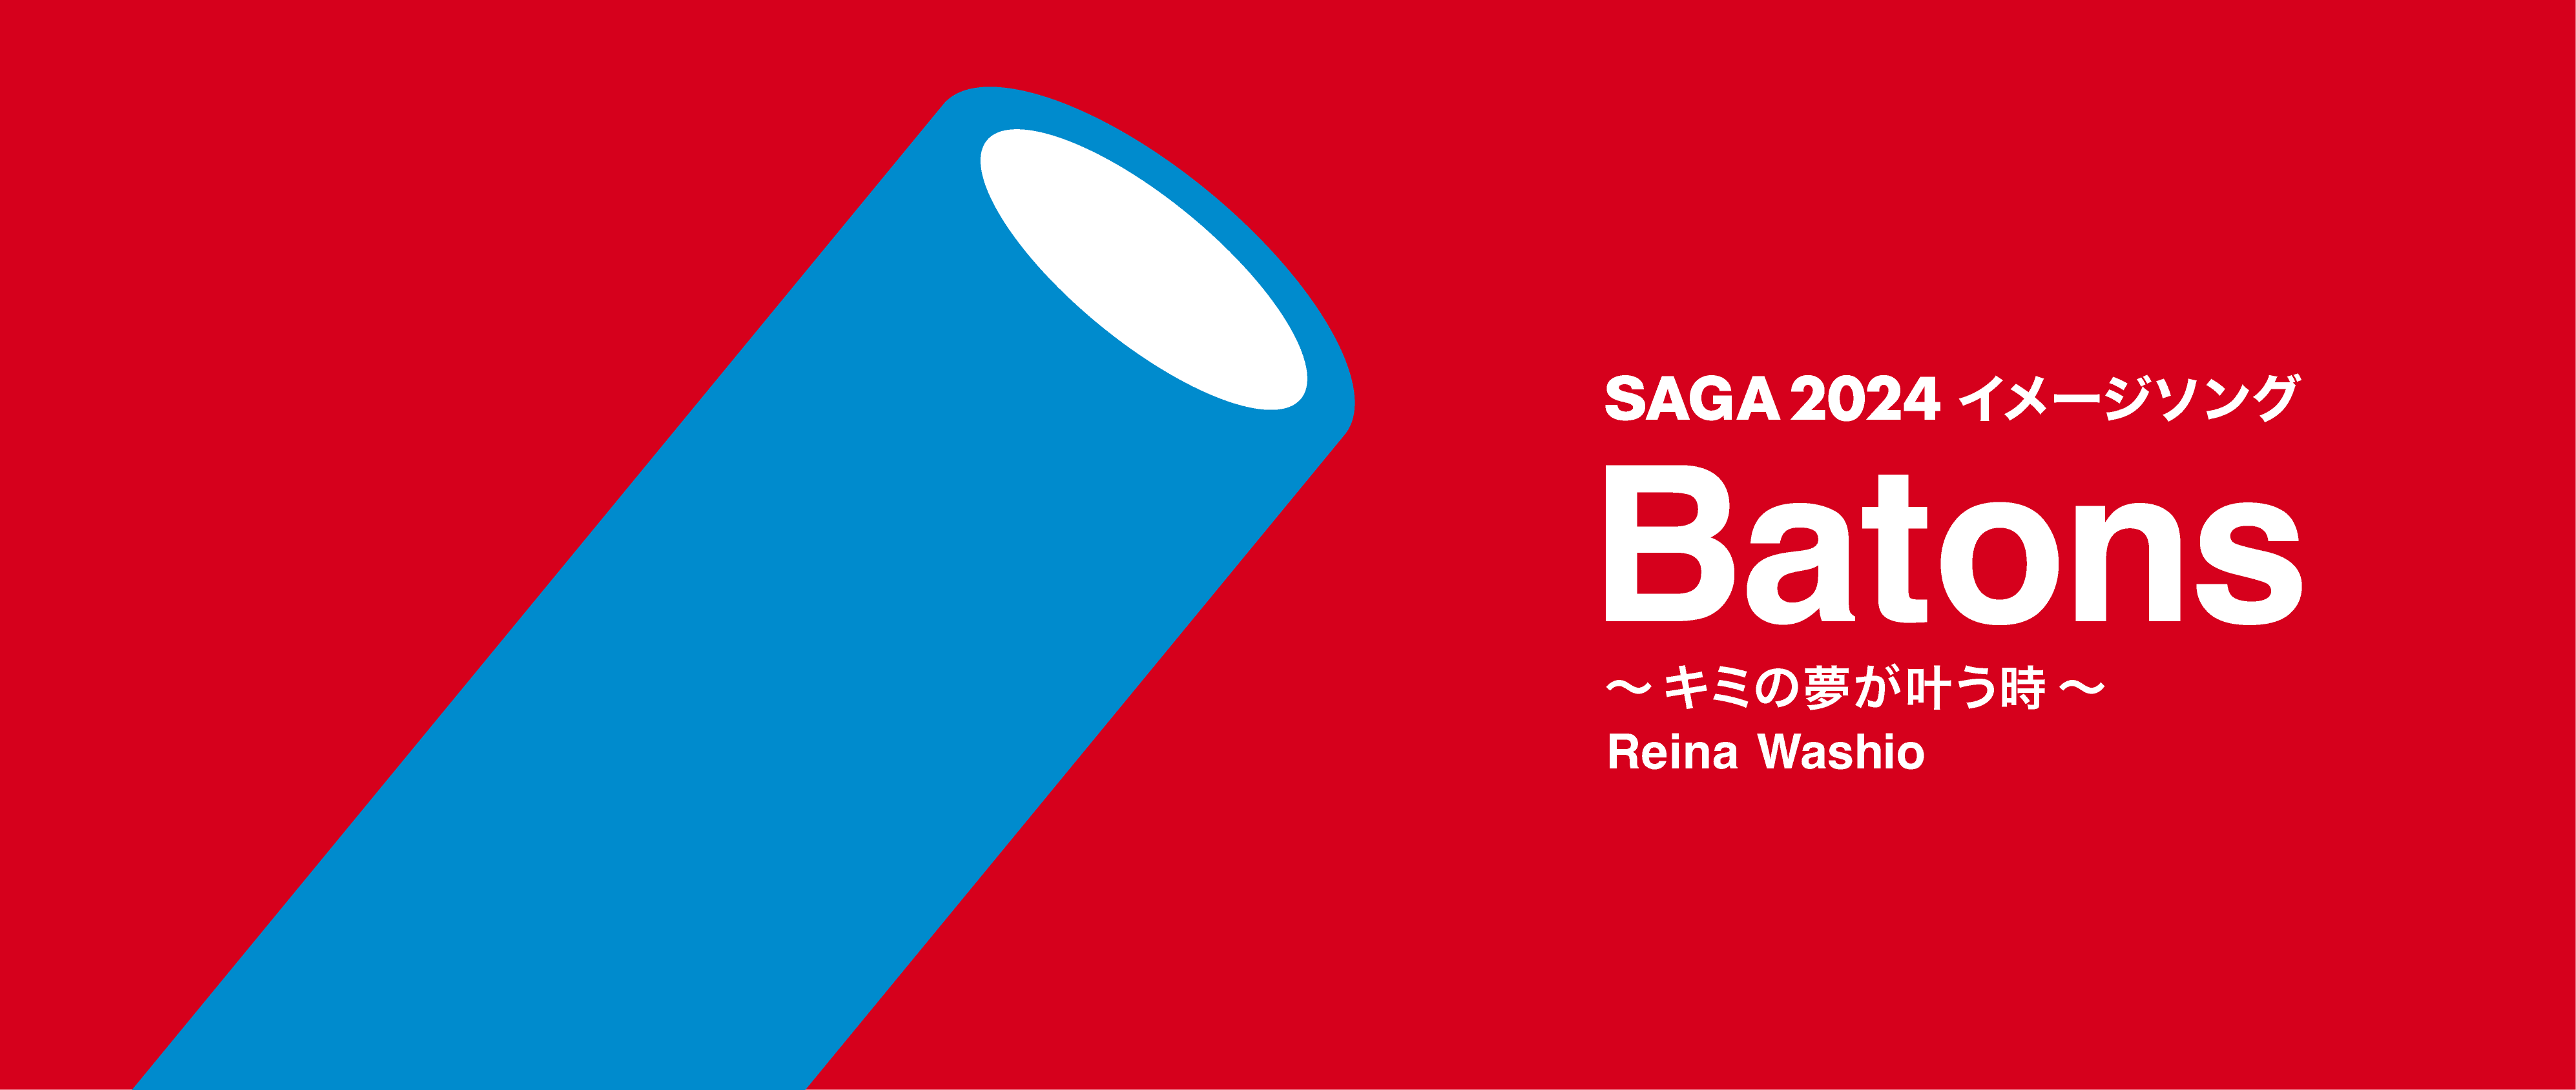 SAGA 2024 イメージソング Batons